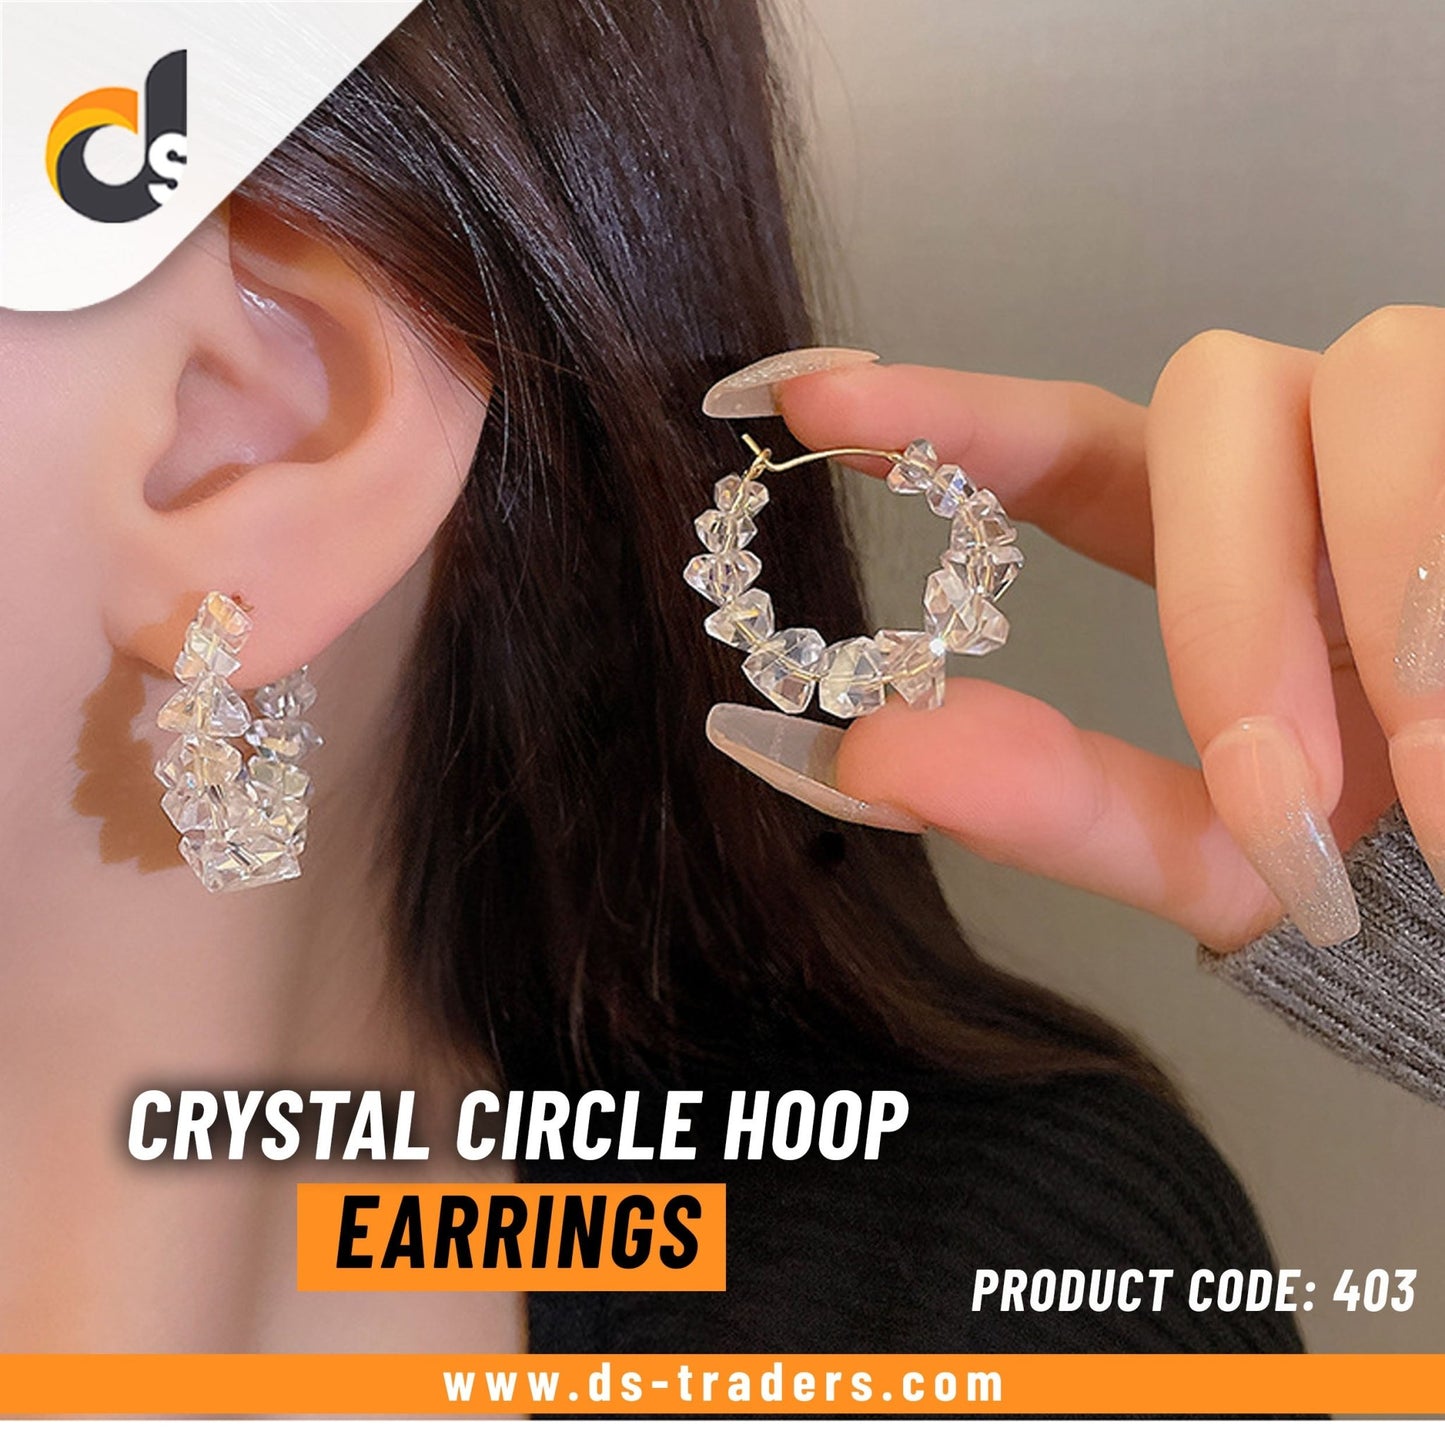 Crystal Circle Hoop Earrings - DS Traders